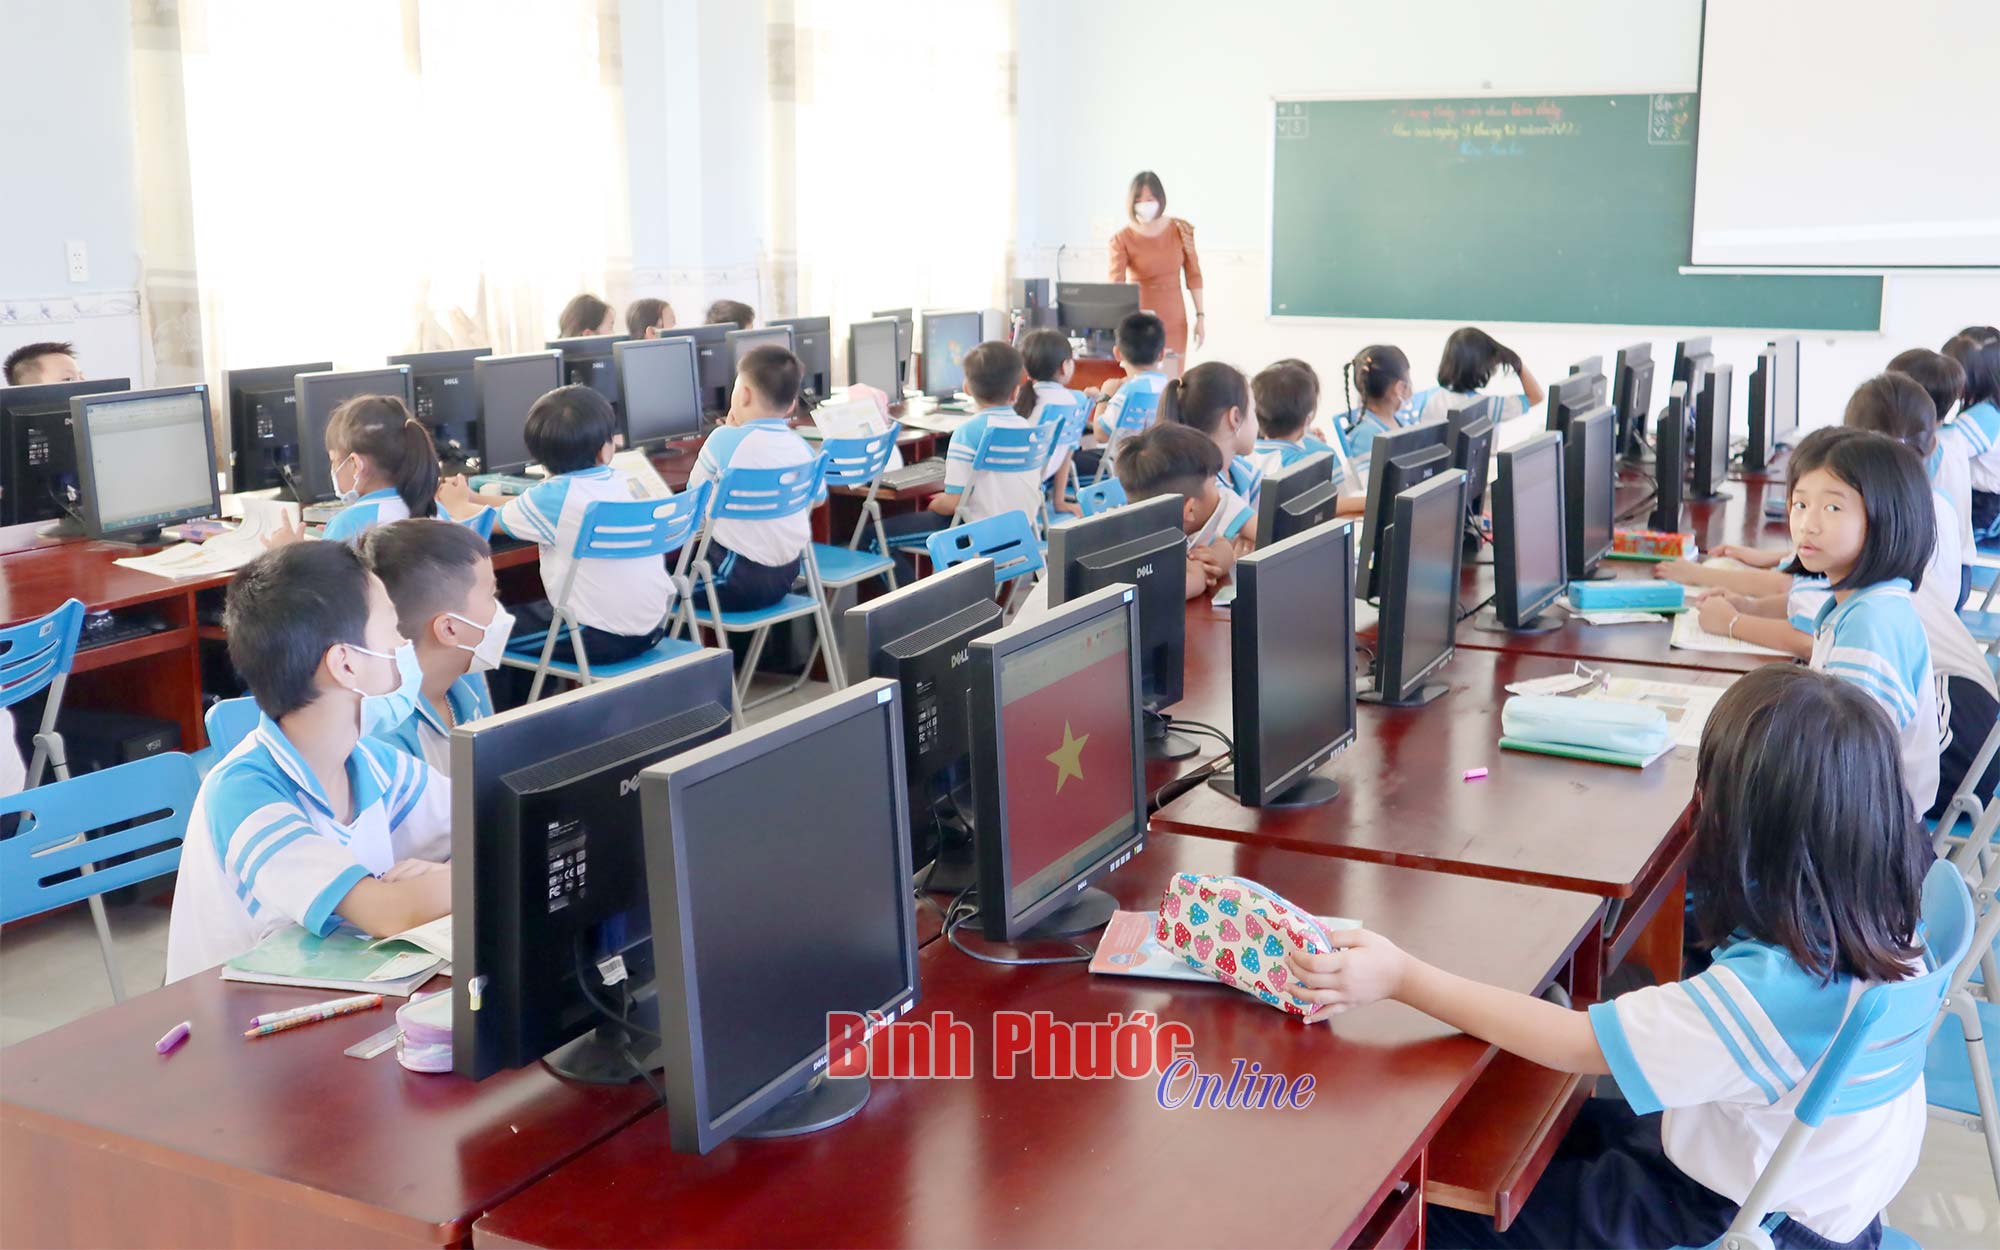 Quyết tâm để hoàn thành mục tiêu xây dựng trường học đạt chuẩn quốc gia của giáo dục tỉnh Bình Phước